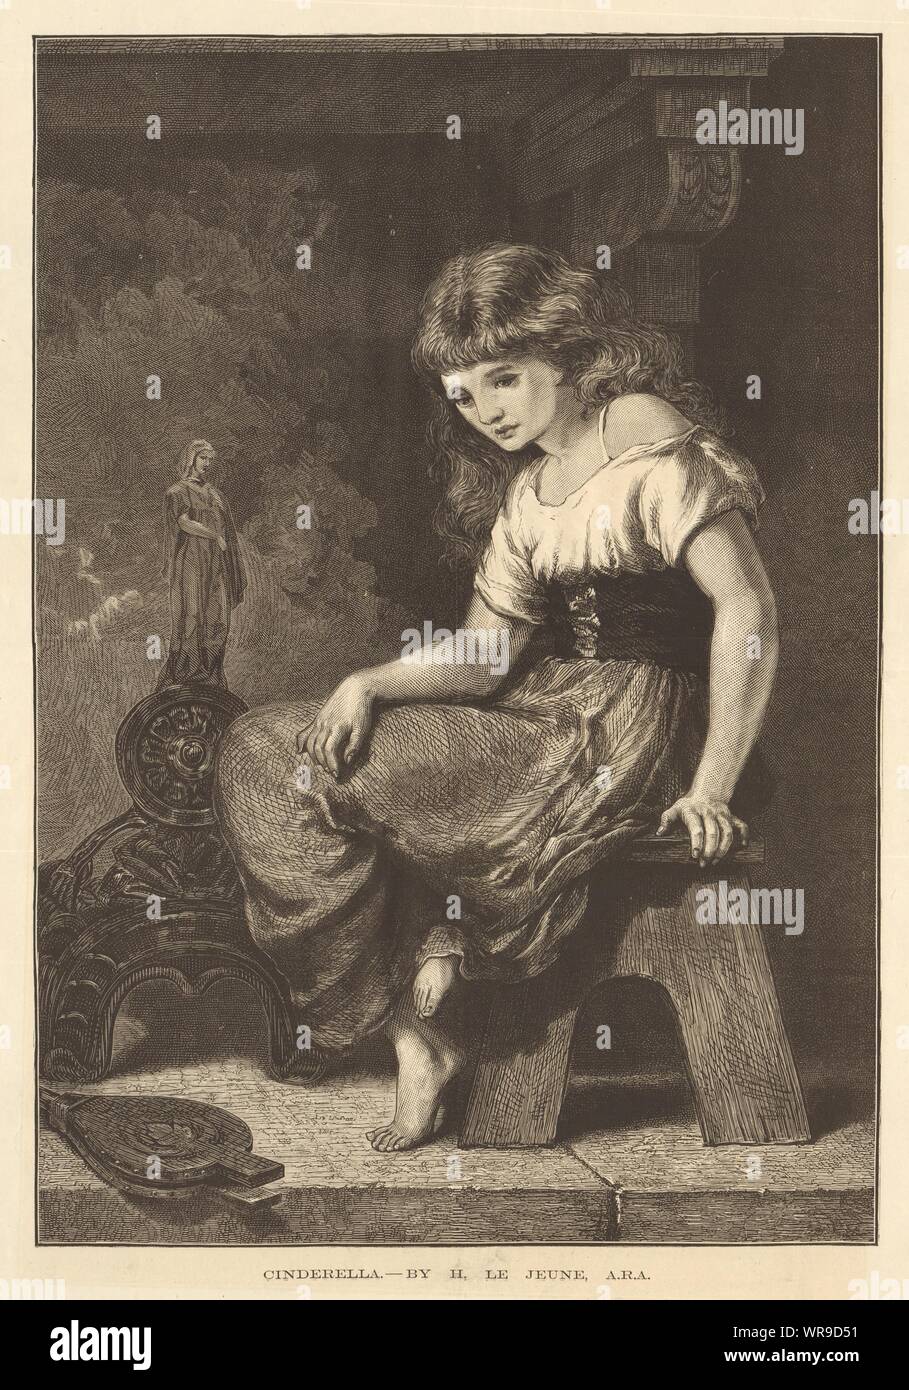 Cinderella - by H. Le Jeune, A. R. A. Children. Fine arts 1876 ILN full page Stock Photo